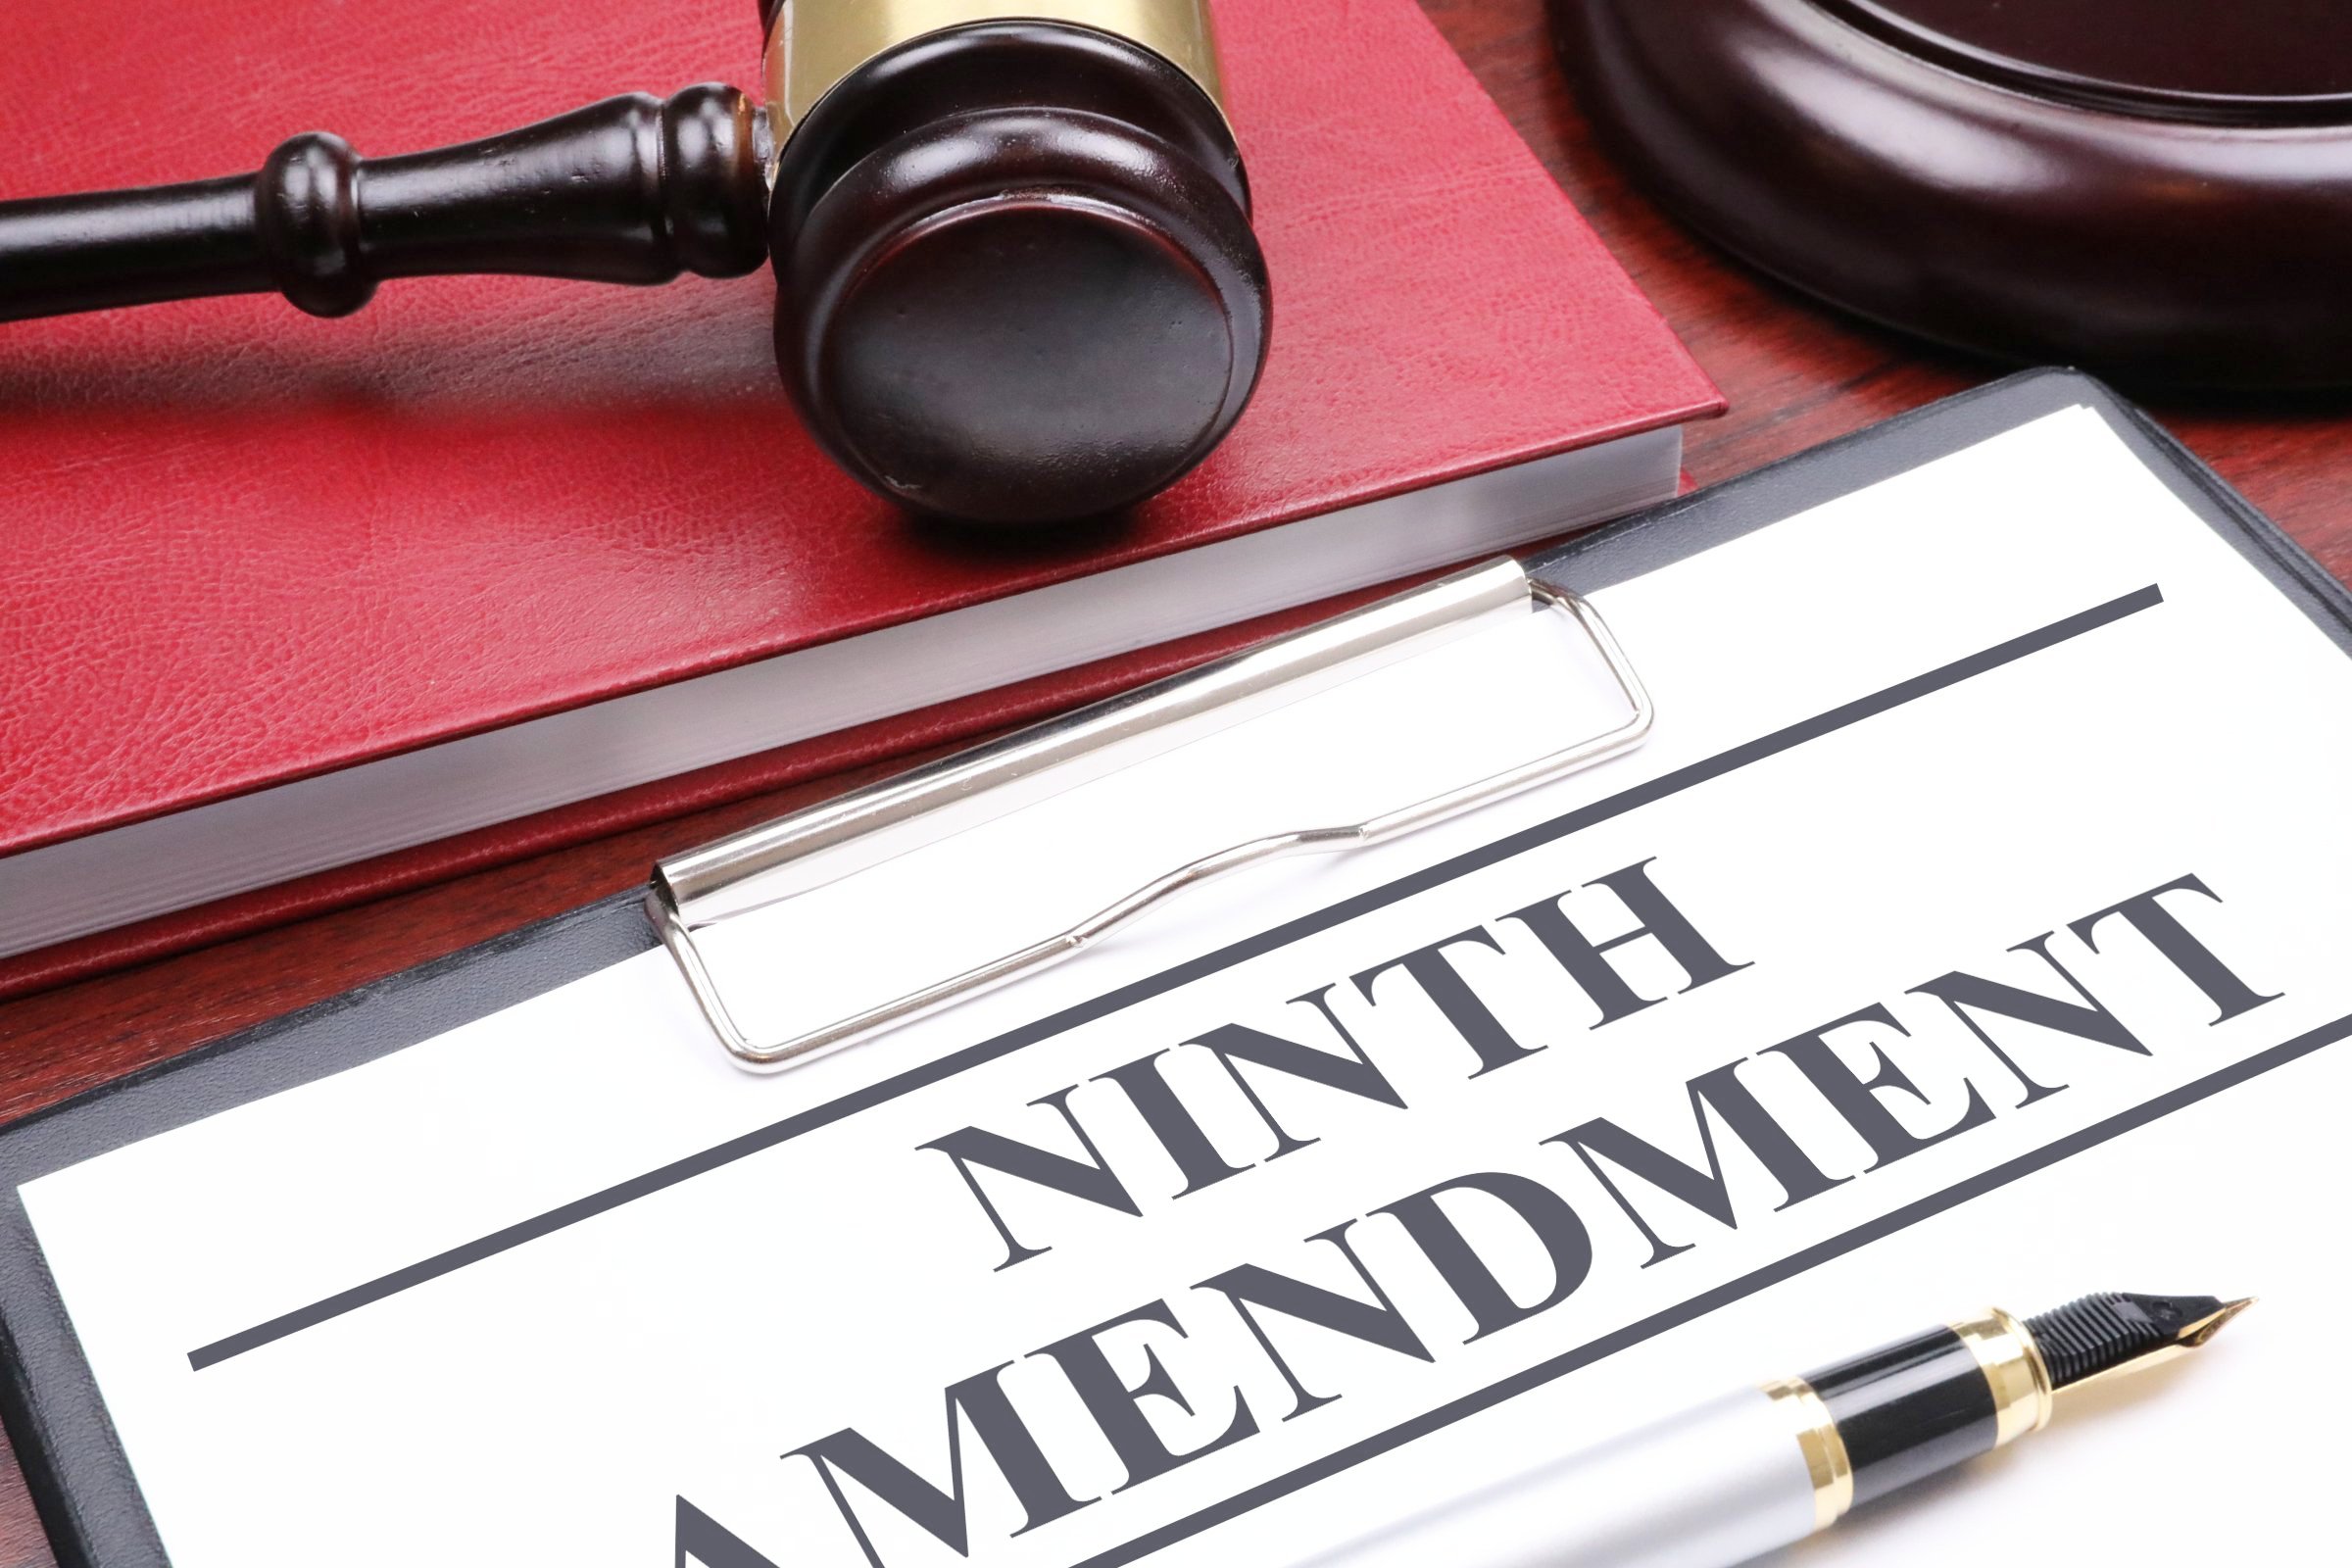 ninth amendment